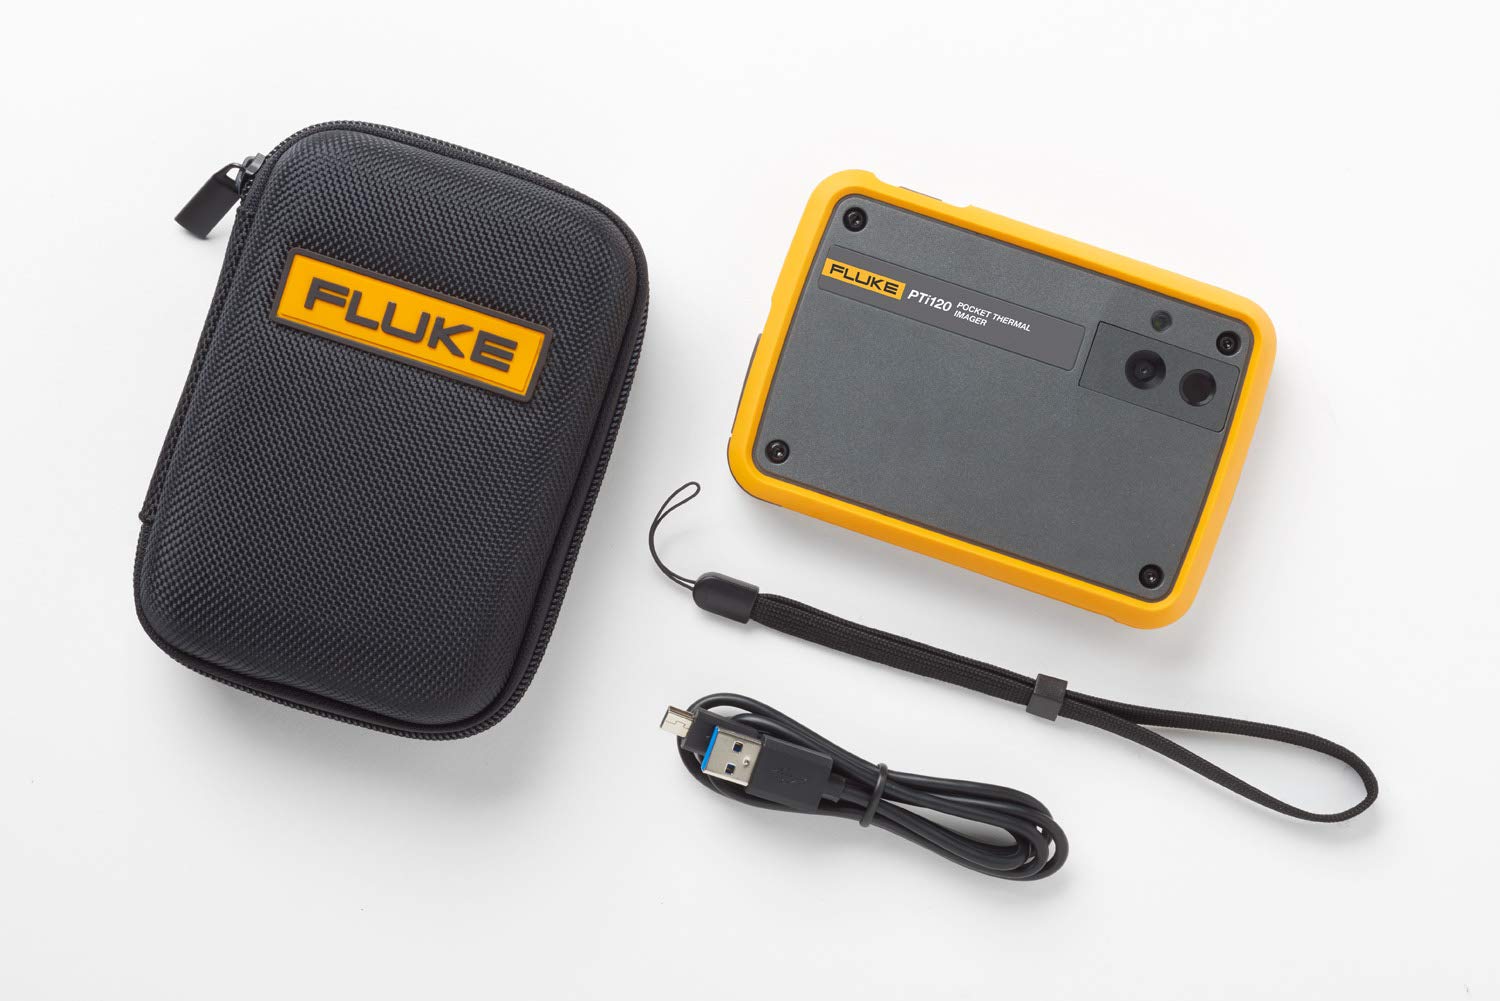 Fluke PTi120 Pocket Thermal Imager